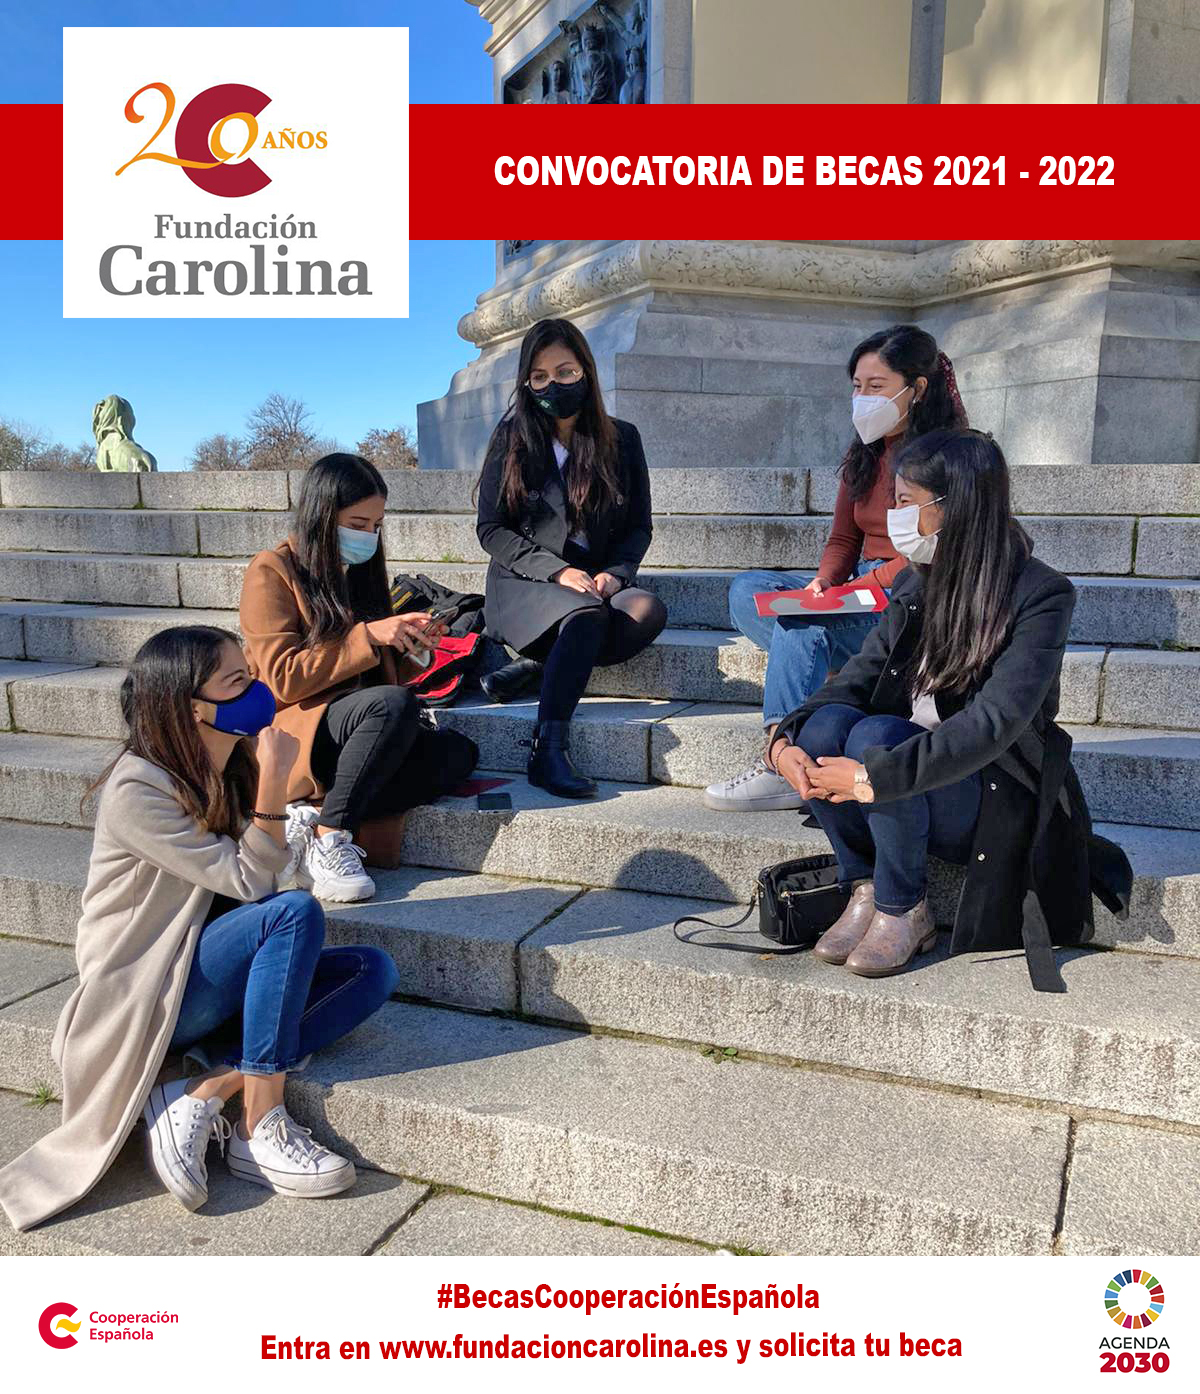 Convocatoria de Becas de la Fundación Carolina 2021-2022